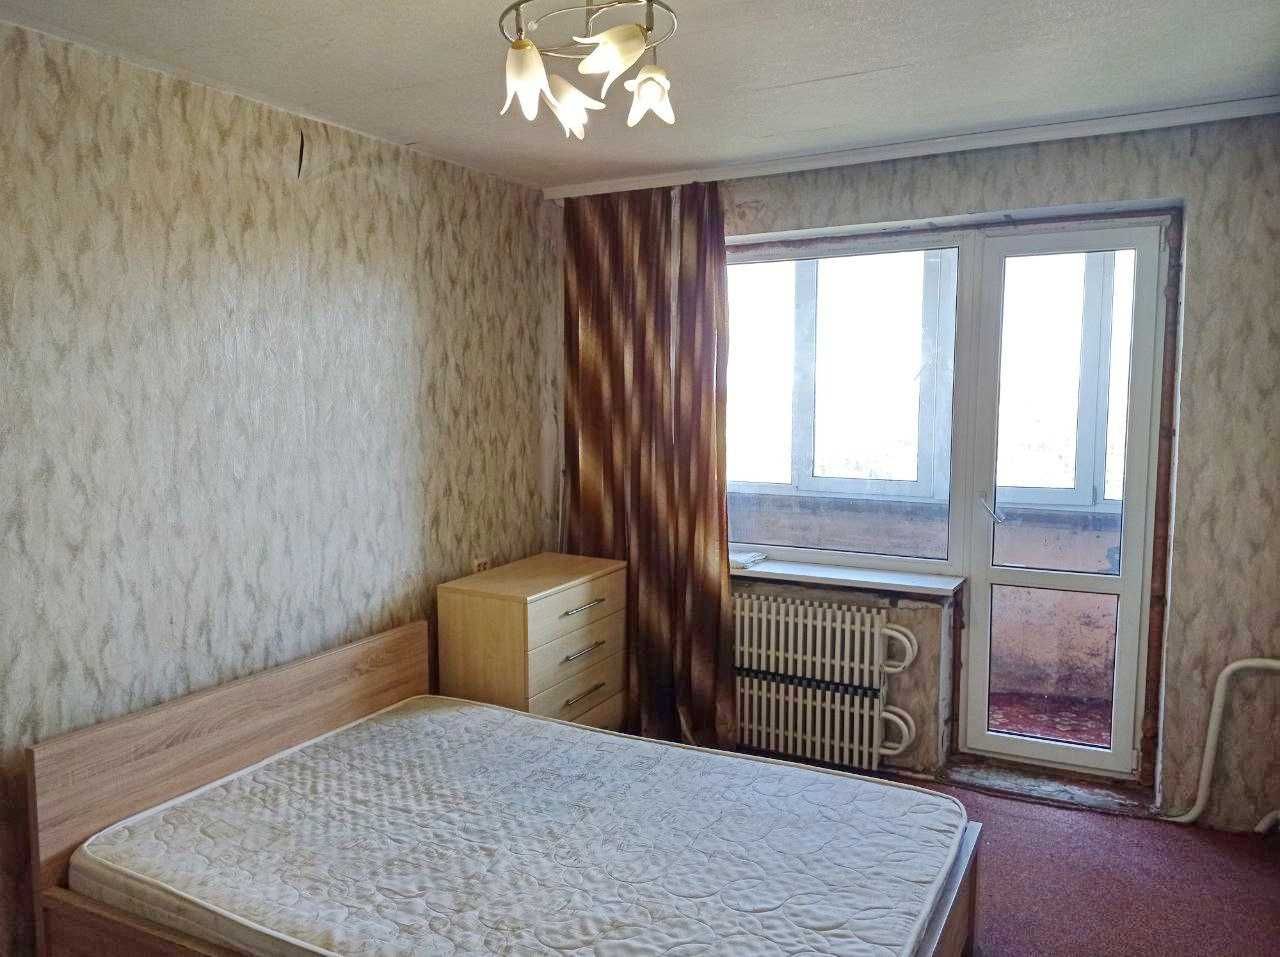 Продам 2-х комнатную квартиру, на ул. Метростроевская, 17 (под ремонт)